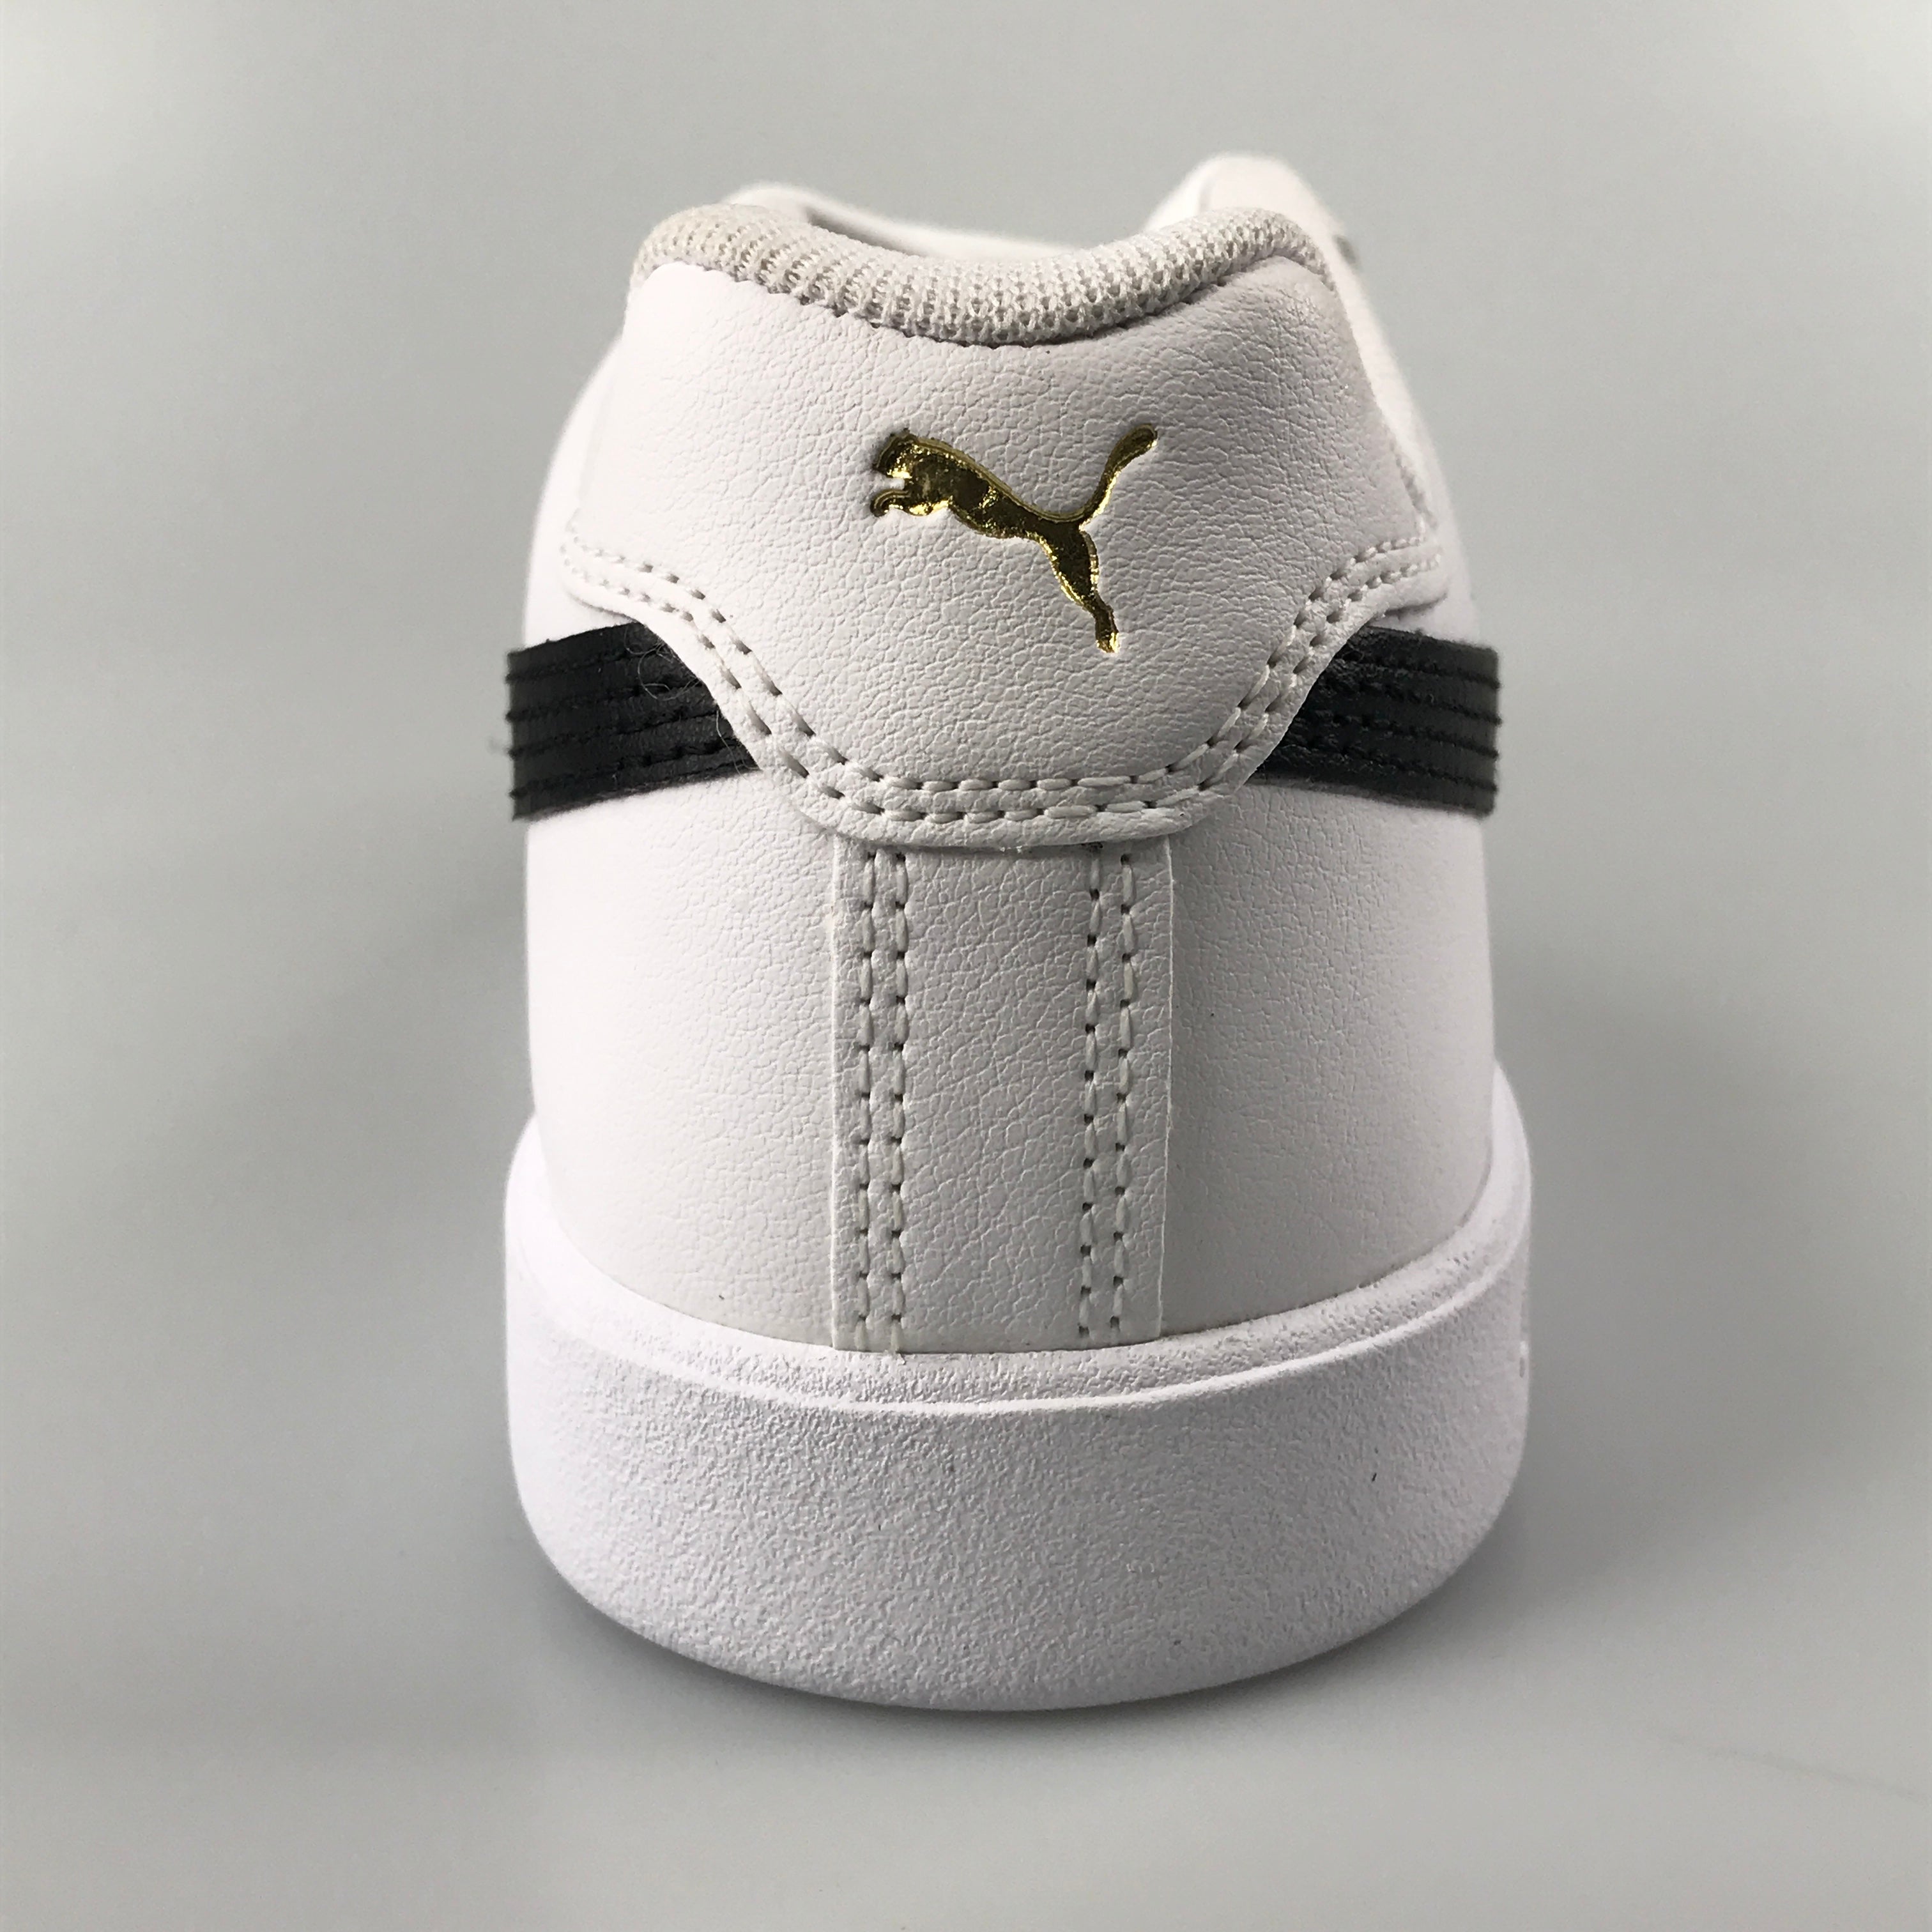 Puma Match Star in white-black-gold Clothing Island R.O.K. –